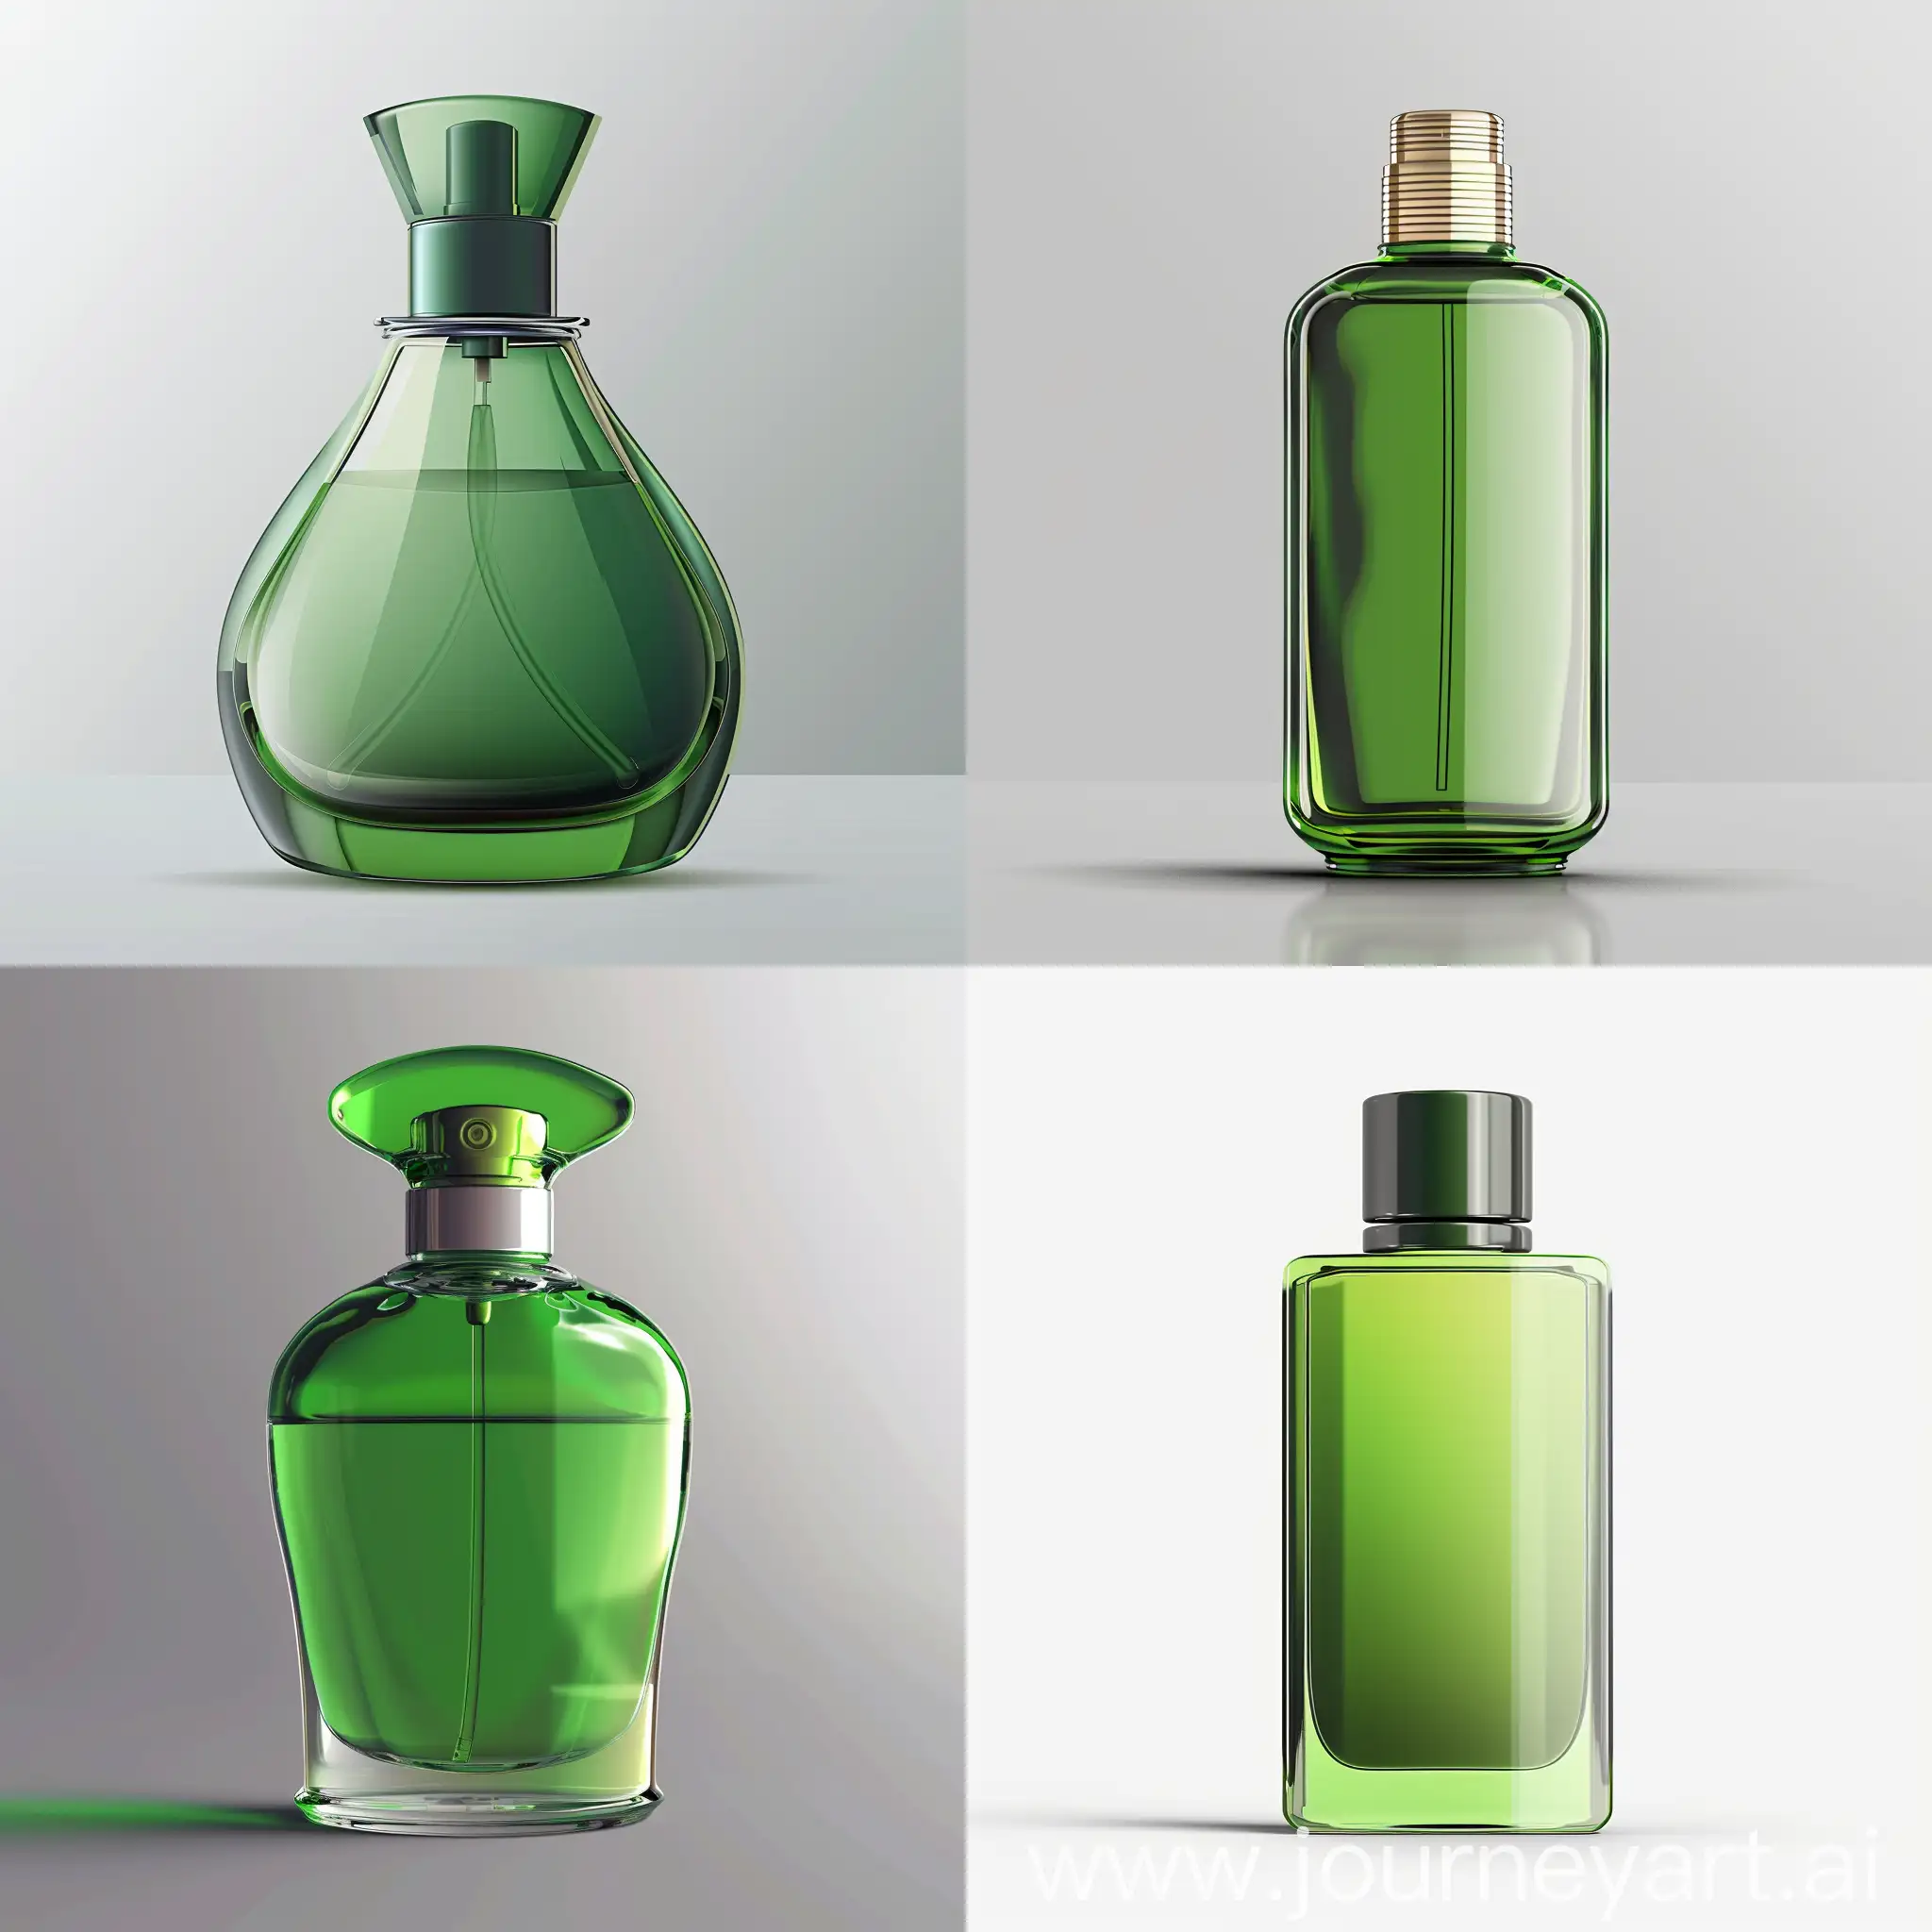 HyperRealistic-Green-Perfume-Bottle-in-WhatsApp-Style